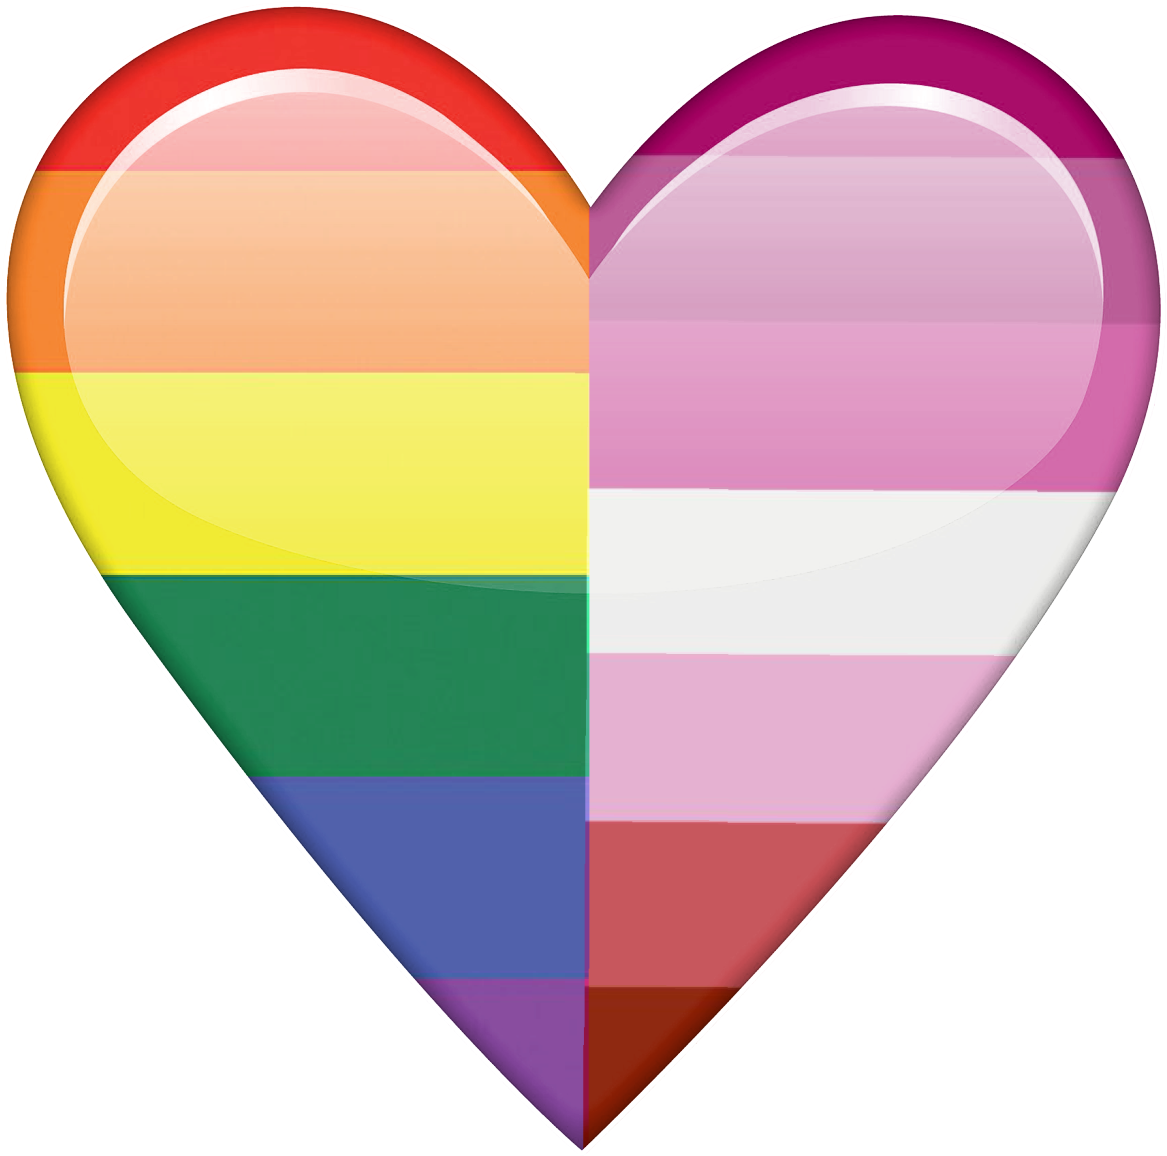 A Heart Shaped Rainbow Flag